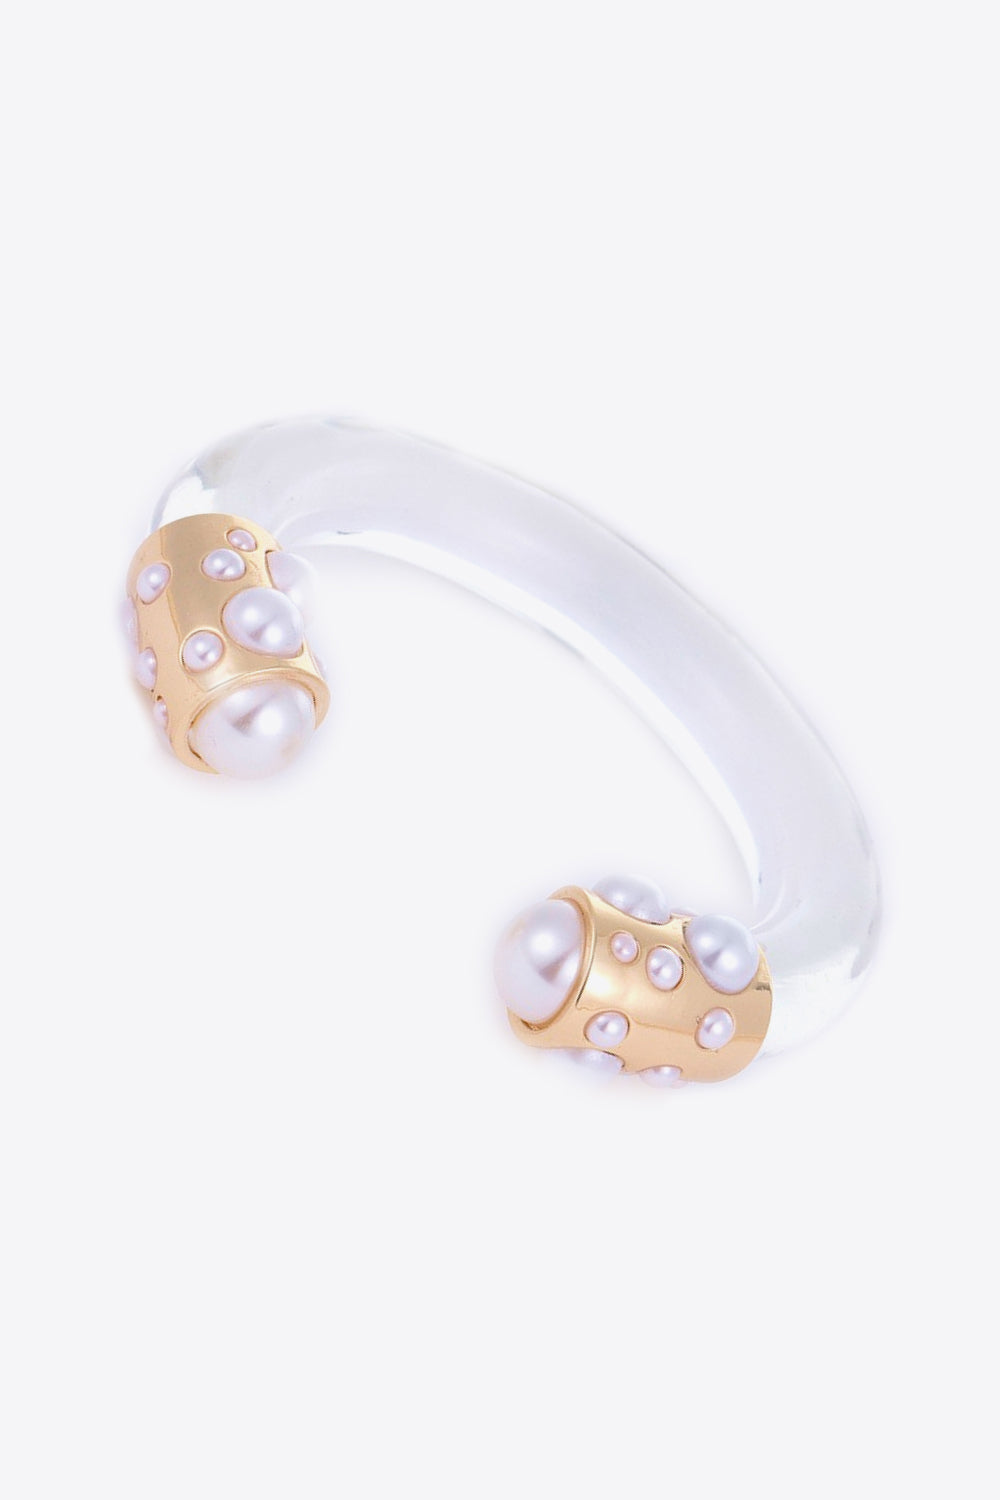 Inlaid Pearl Open Bracelet - Gold / One Size - Women’s Jewelry - Bracelets - 2 - 2024